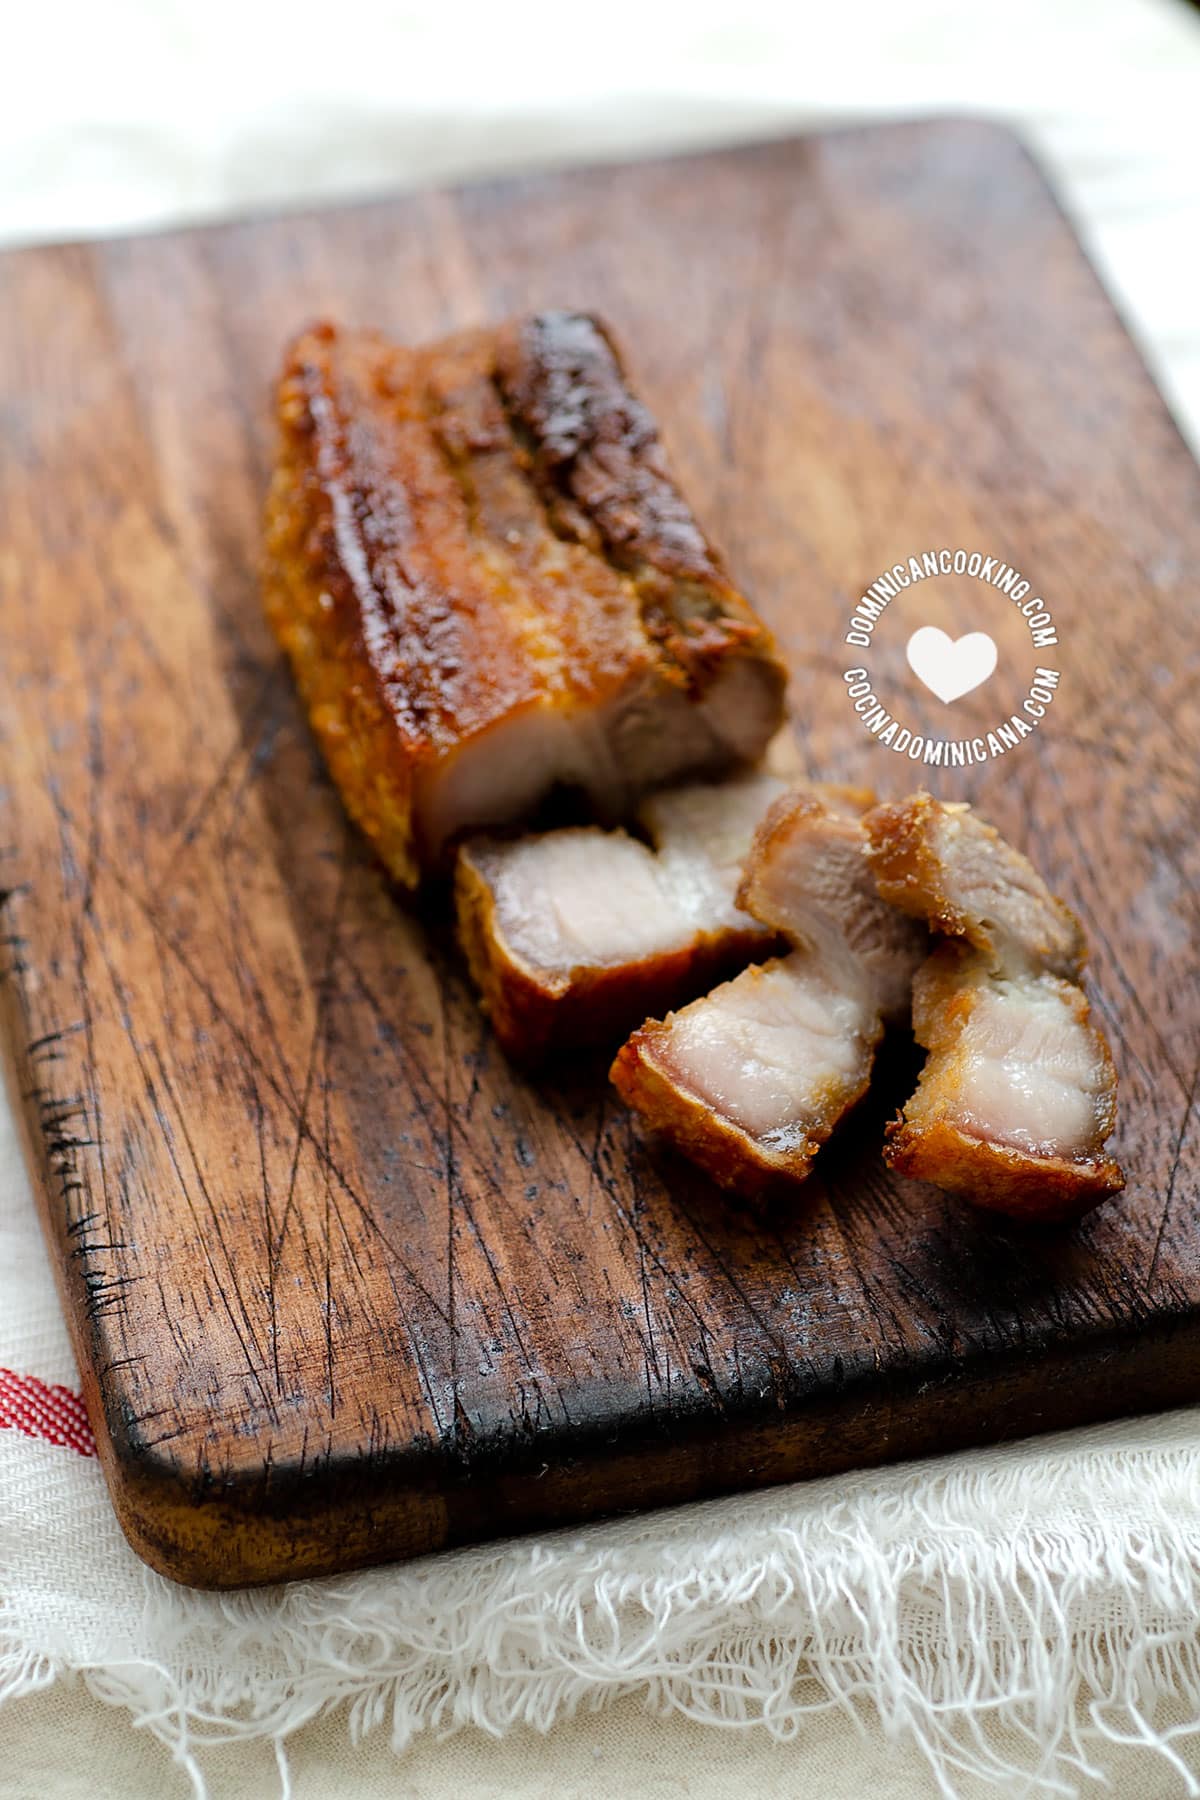 Chicharrón de Cerdo (Dominican Pork Crackling)